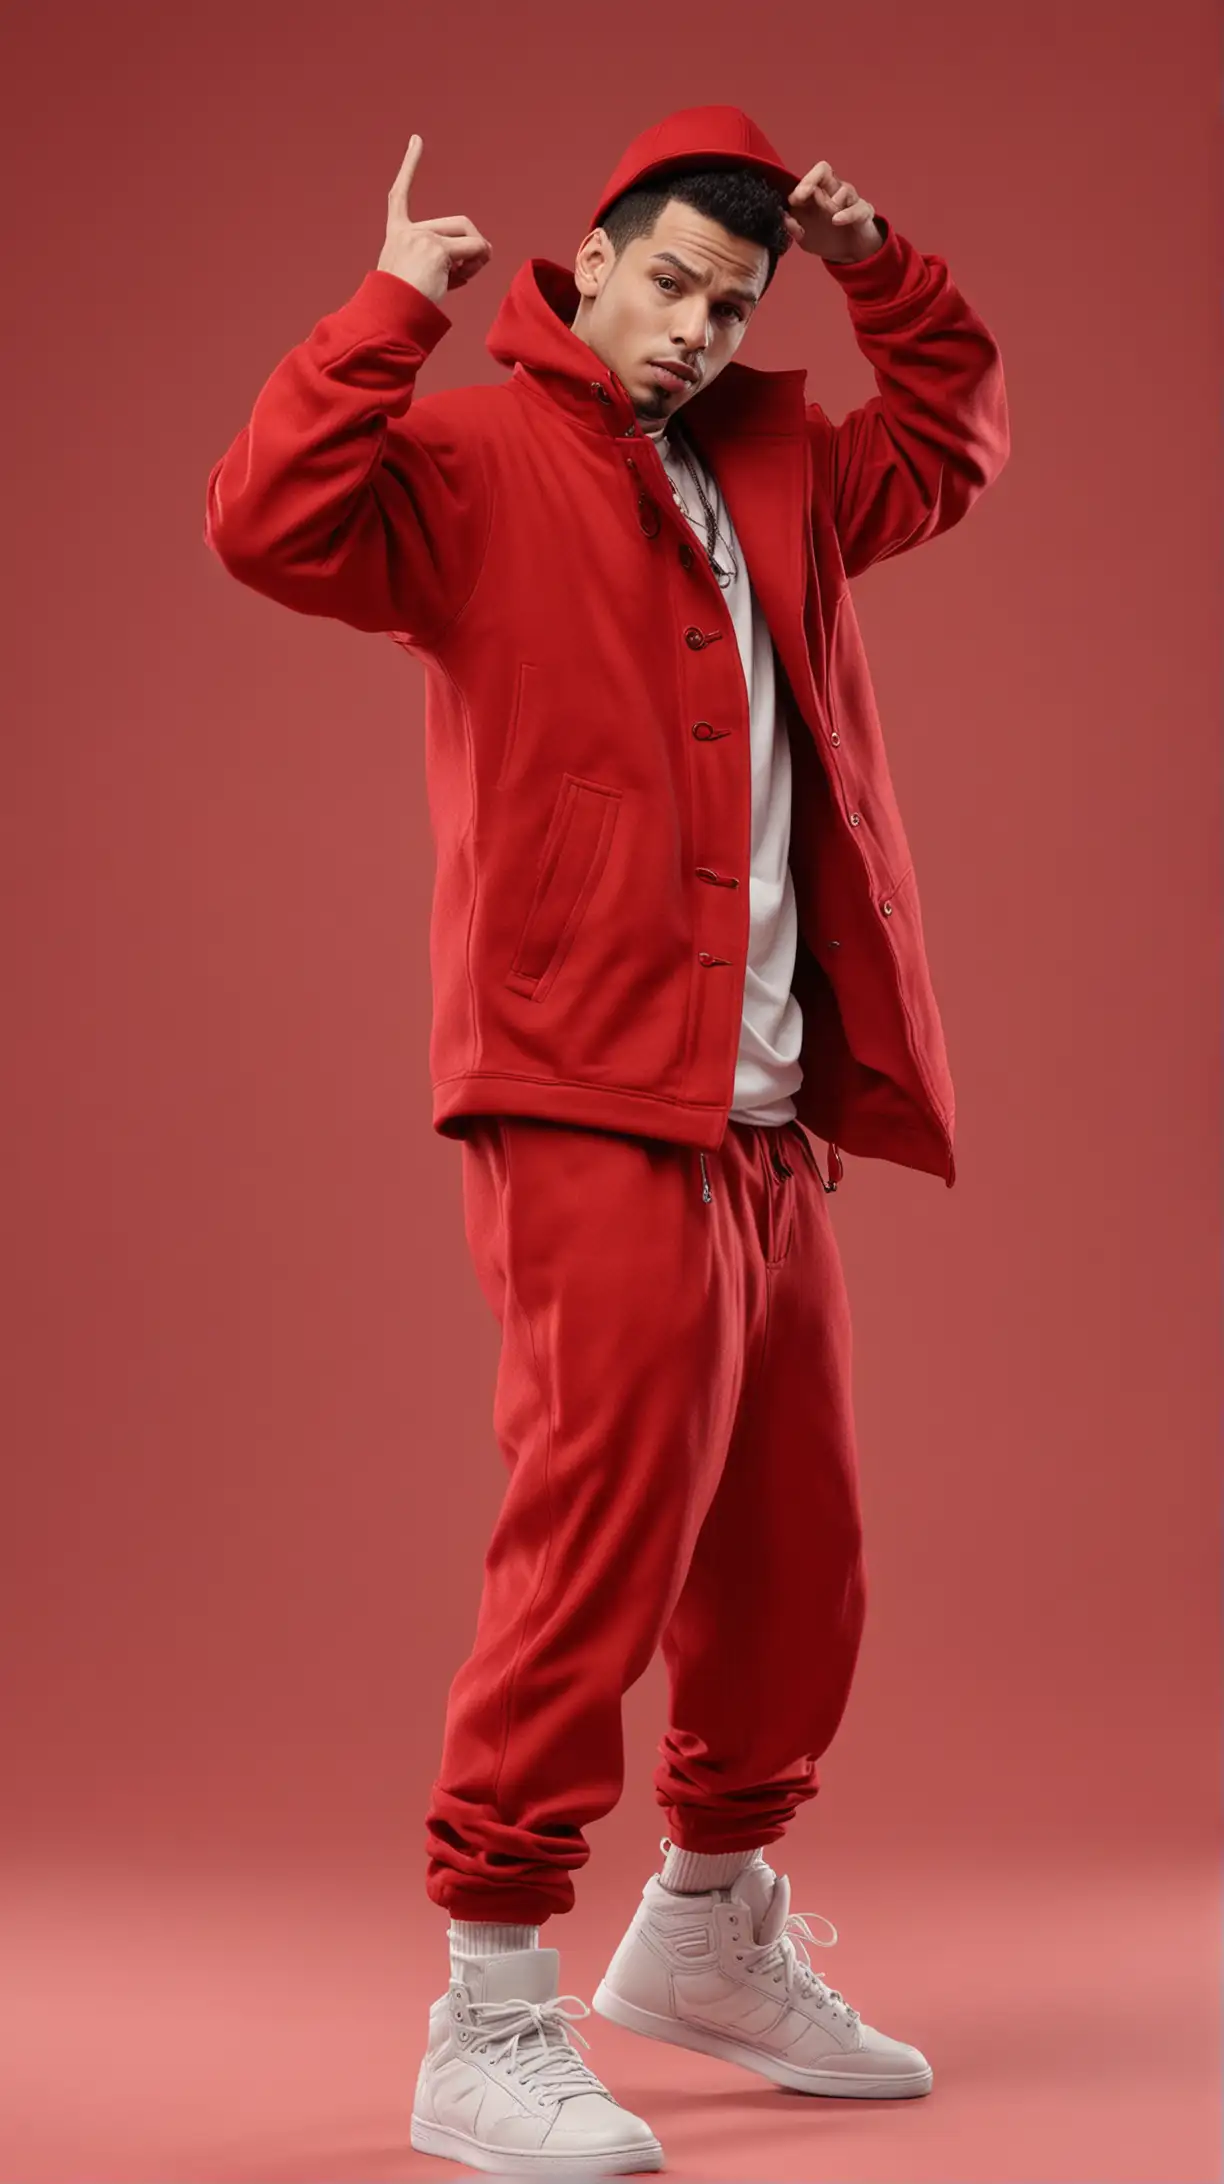 Hip Hop Dancer in Red Coat on Solid Background